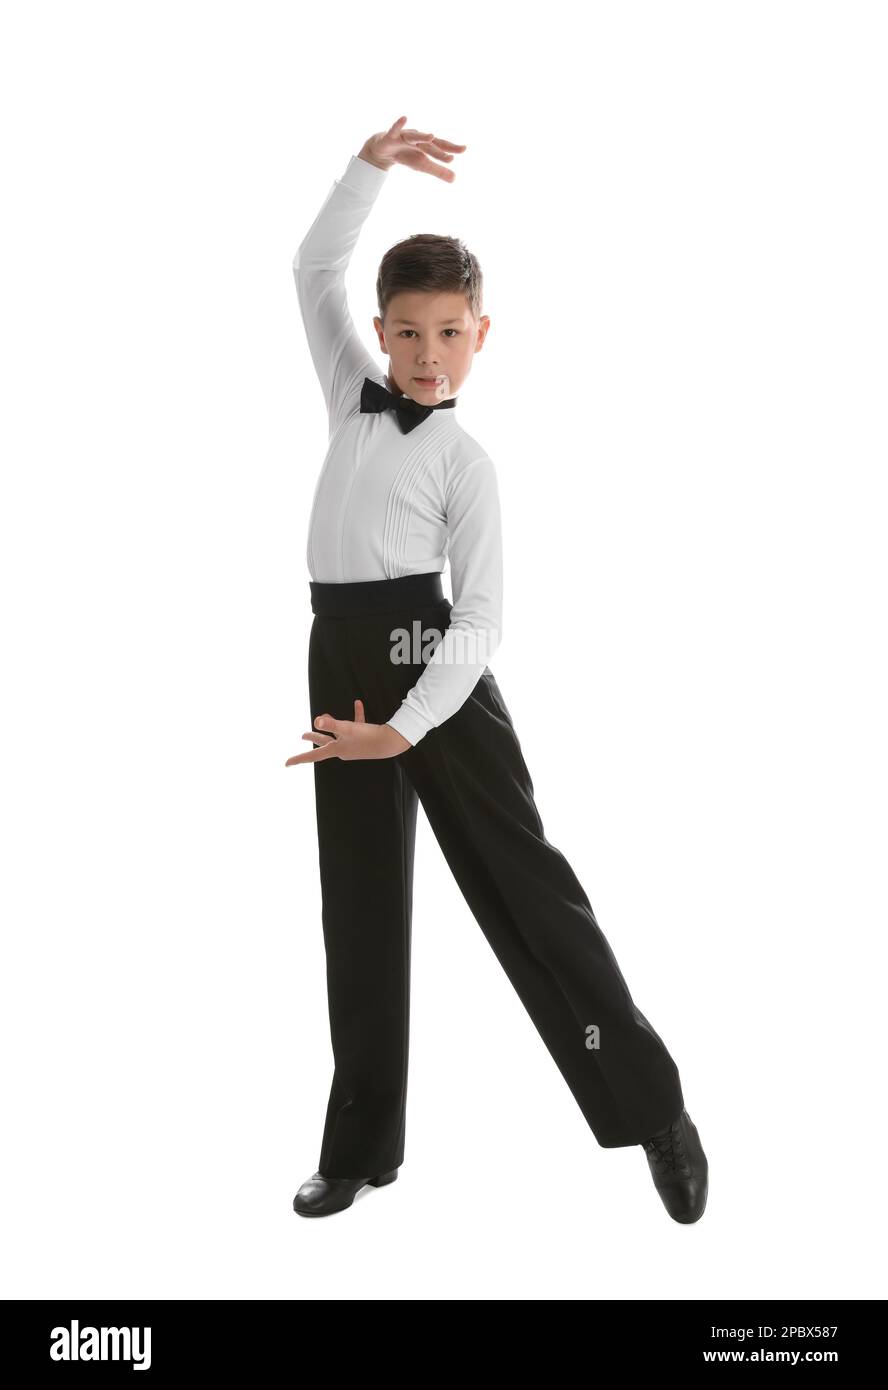 Schön gekleideter kleiner Junge, der auf weißem Hintergrund tanzt Stockfoto